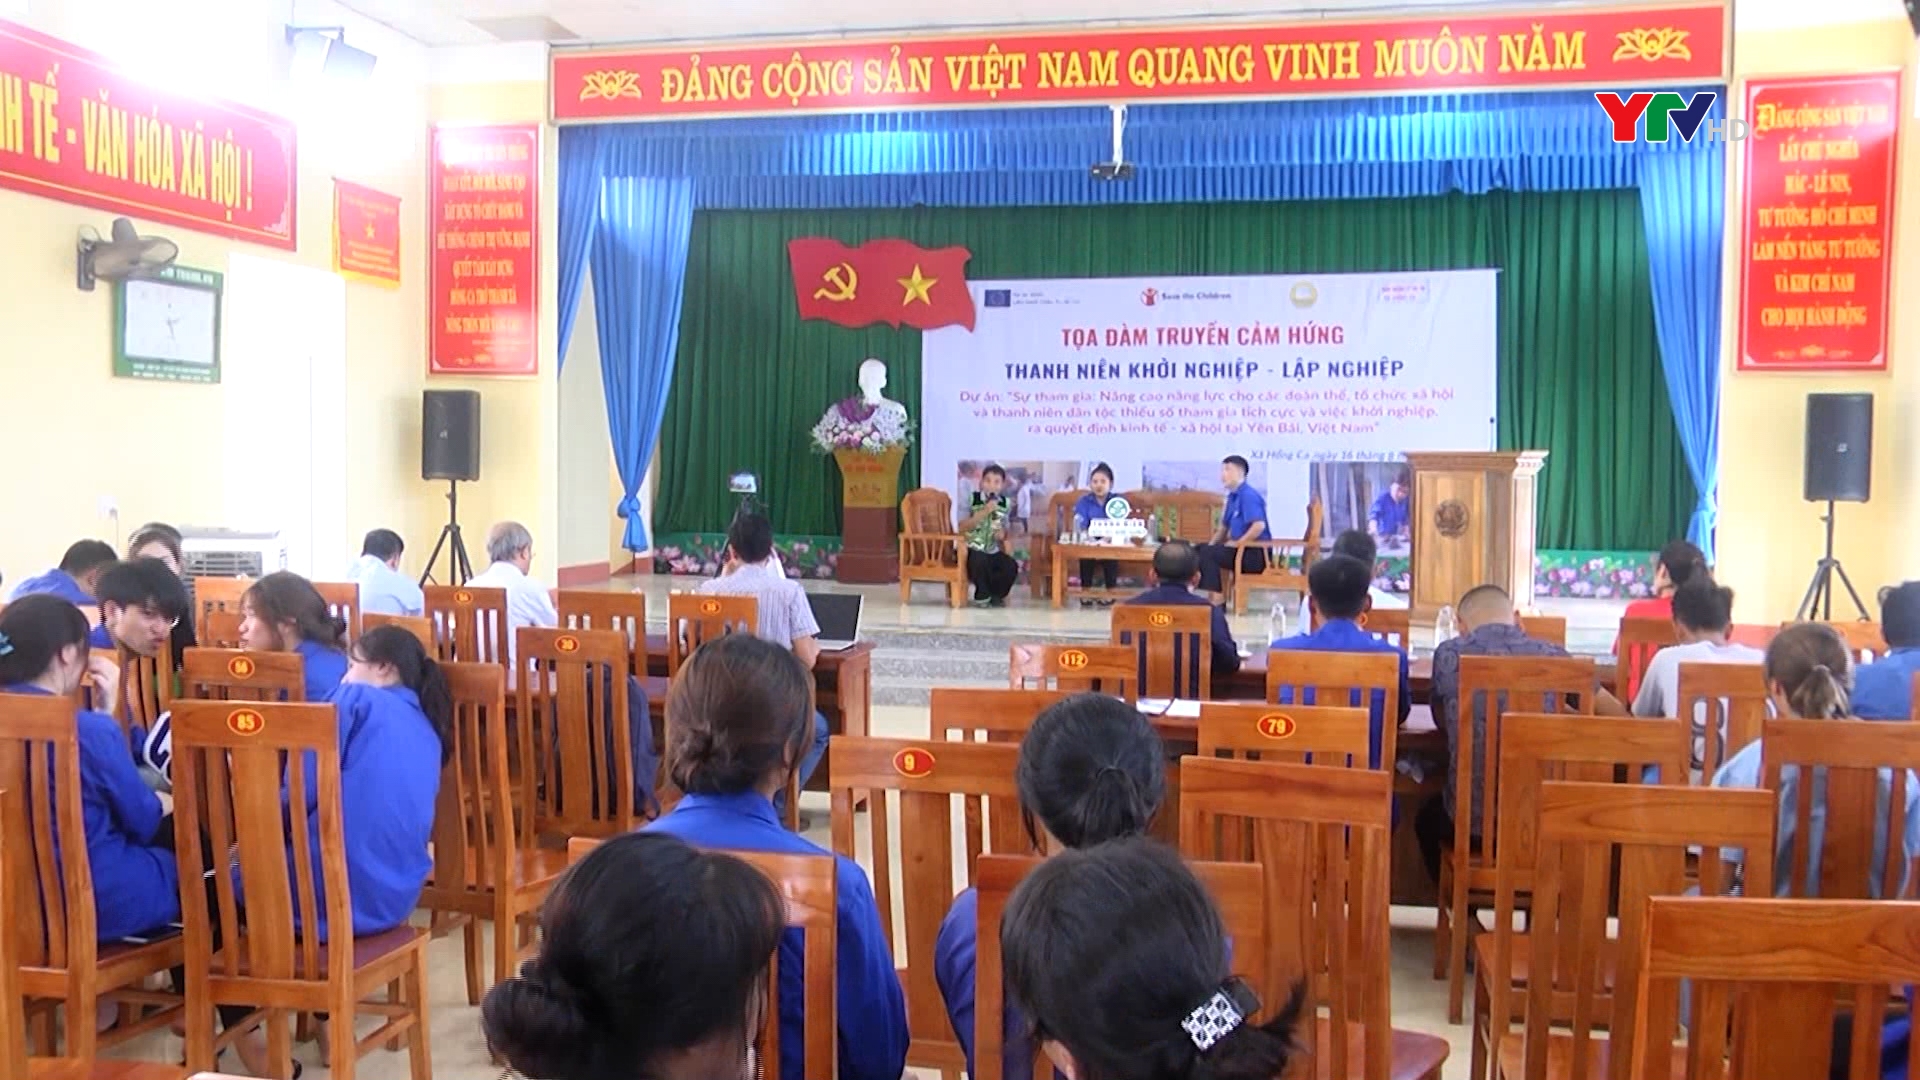 Tọa đàm truyền cảm hứng “Thanh niên khởi nghiệp - lập nghiệp” tại xã Hồng Ca, huyện Trấn Yên